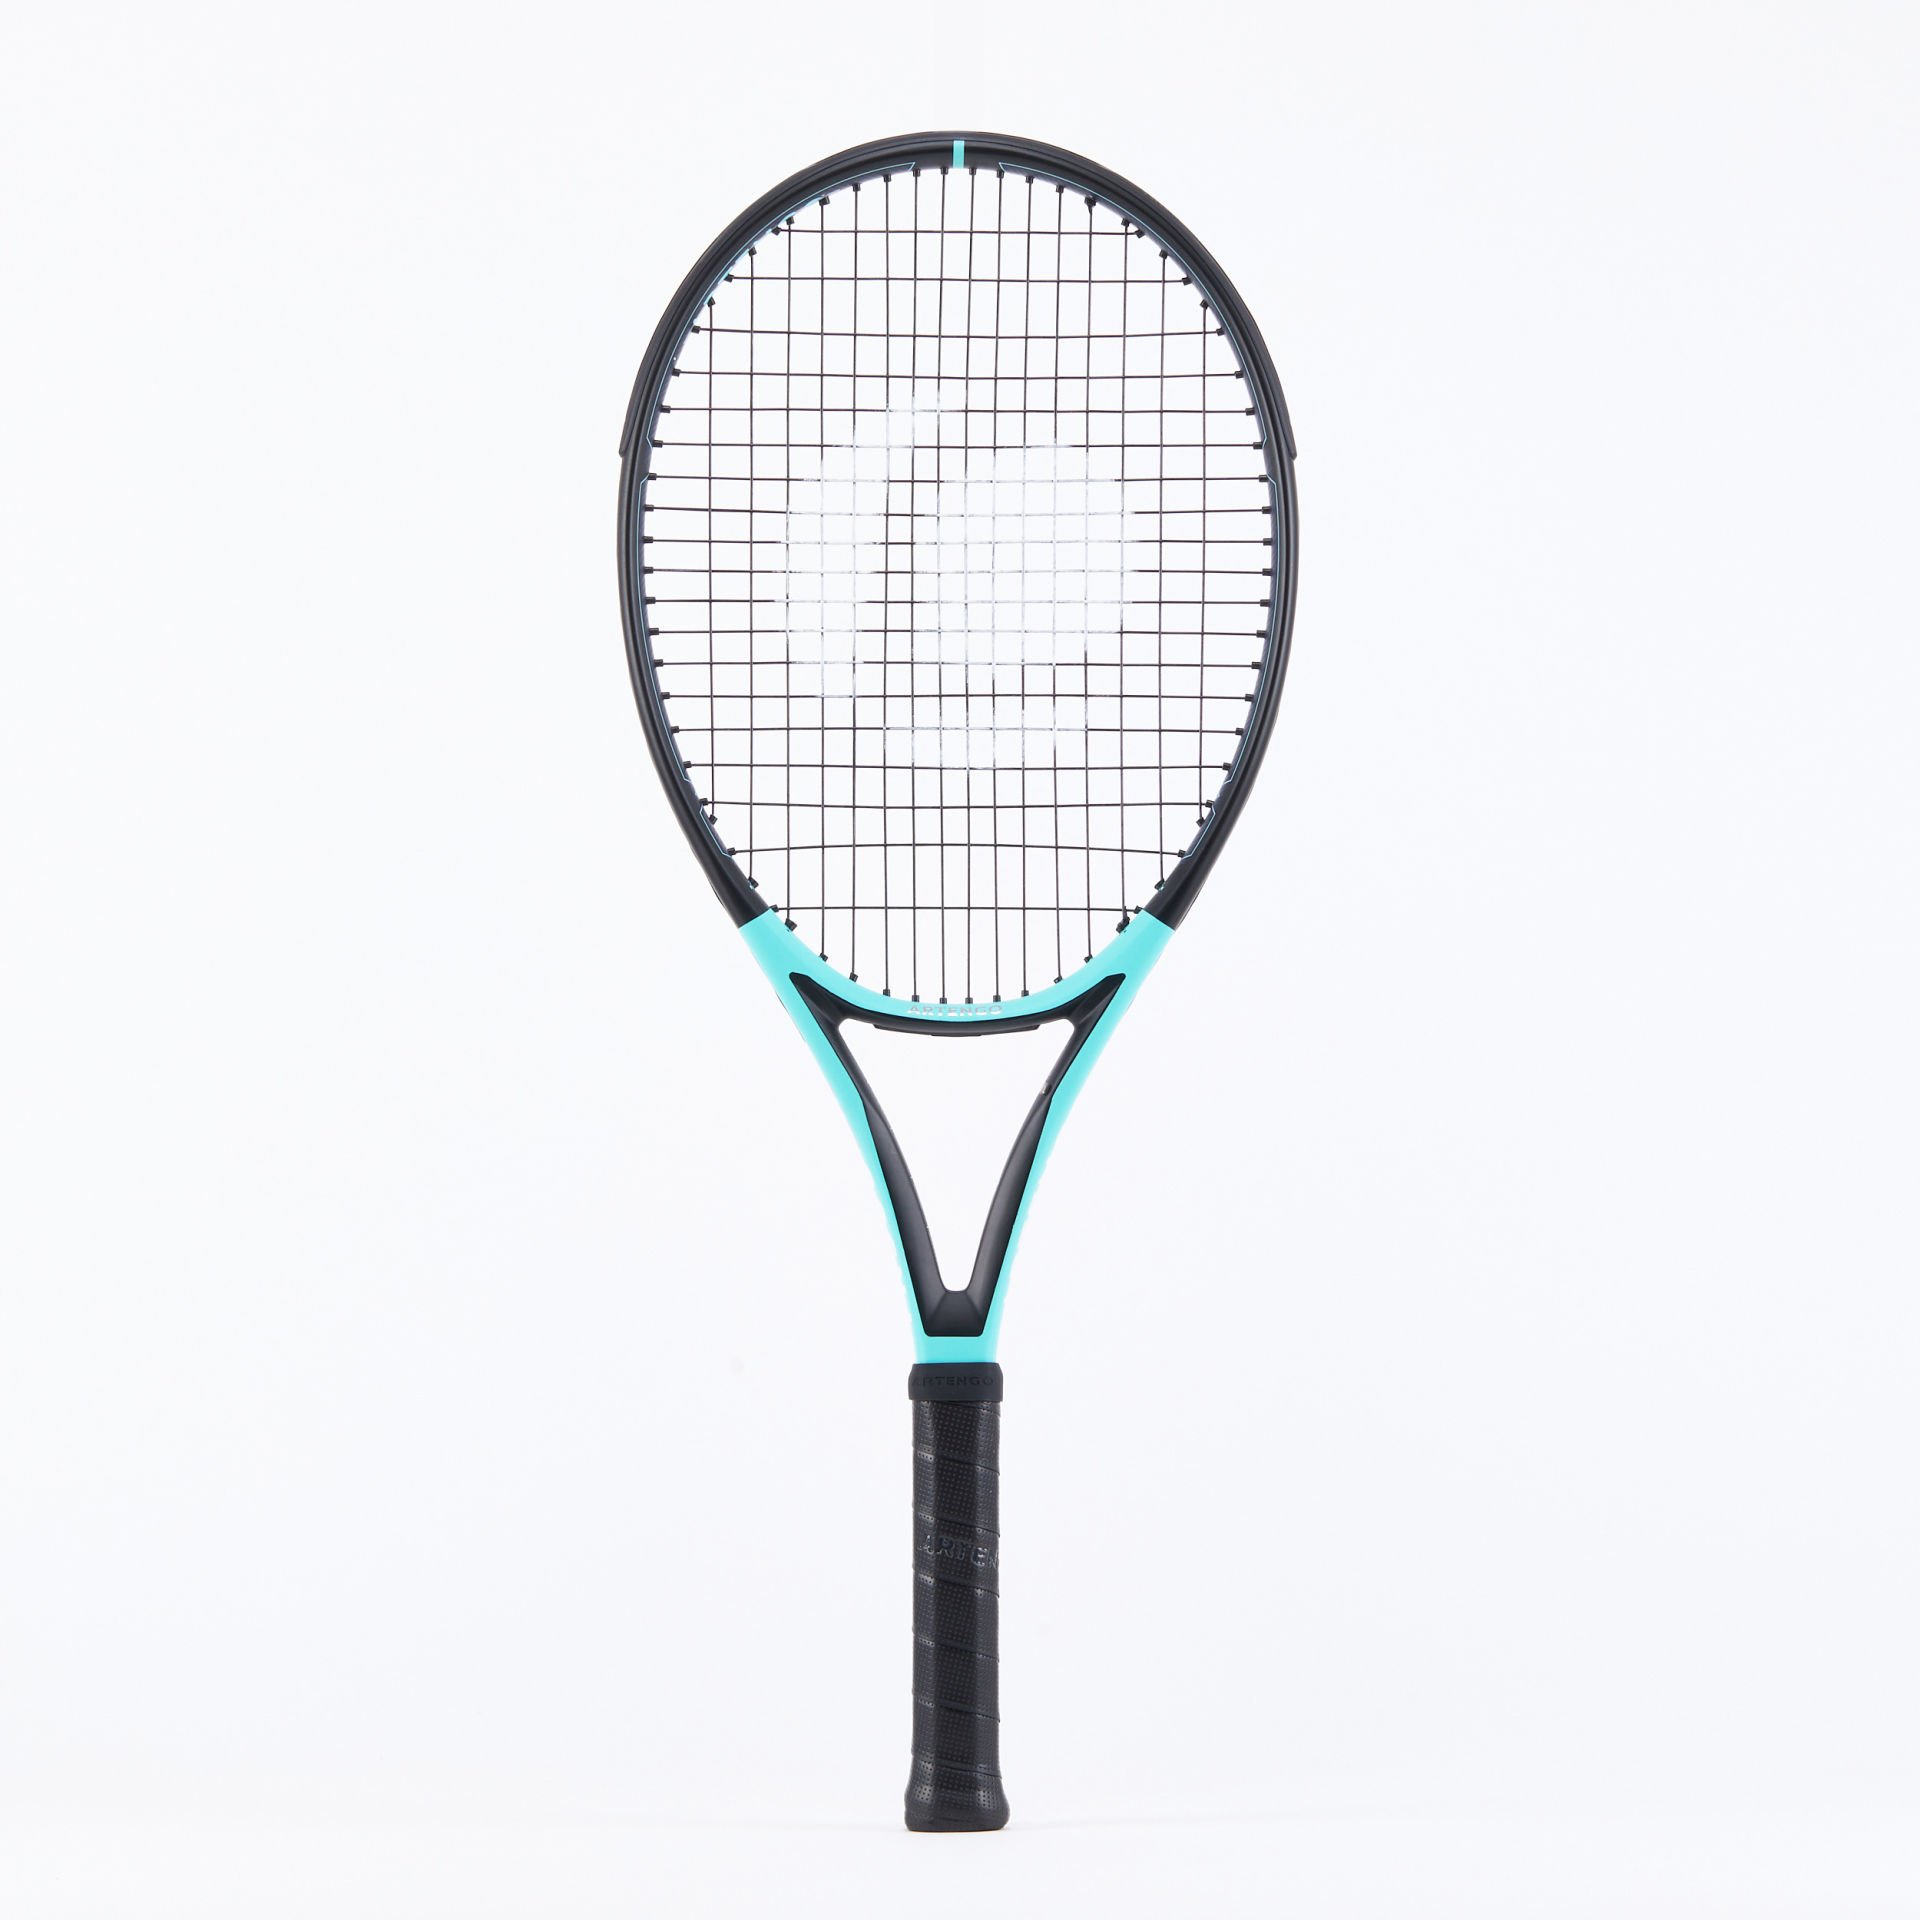 Artengo Tenis Raketi - TR500 Lite - 265 gr. - Turkuaz/Siyah